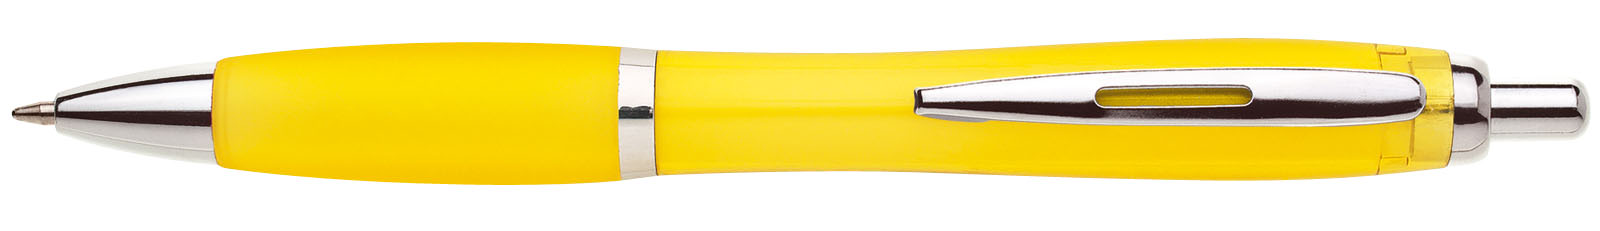 Propiska plast ULTA, žlutá